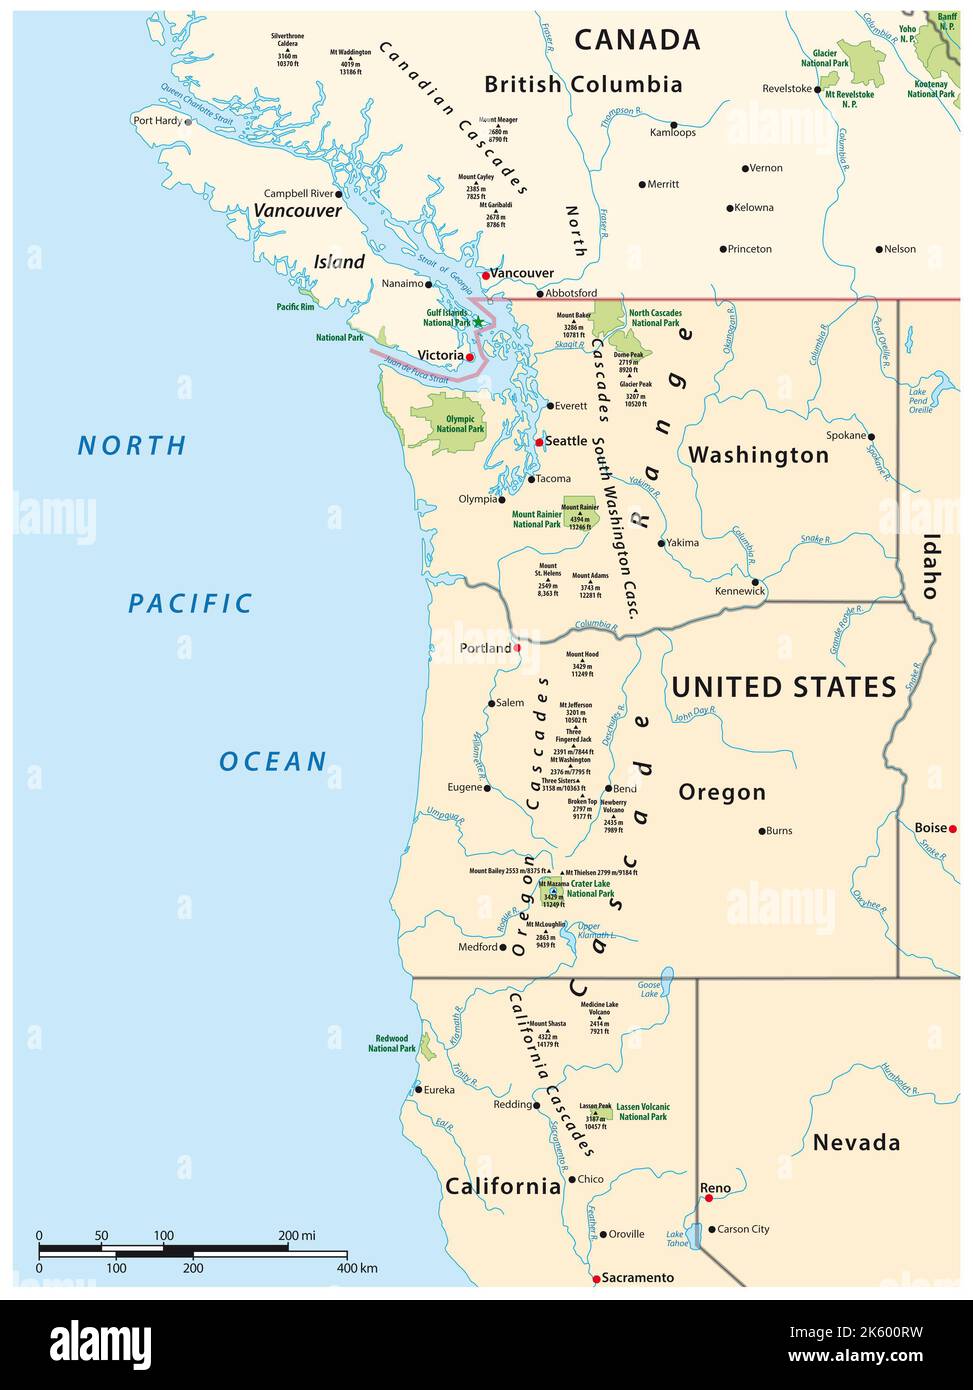 Mapa de la cordillera Cascade, cordillera volcánica que corre paralela a la costa oeste de América del Norte Foto de stock